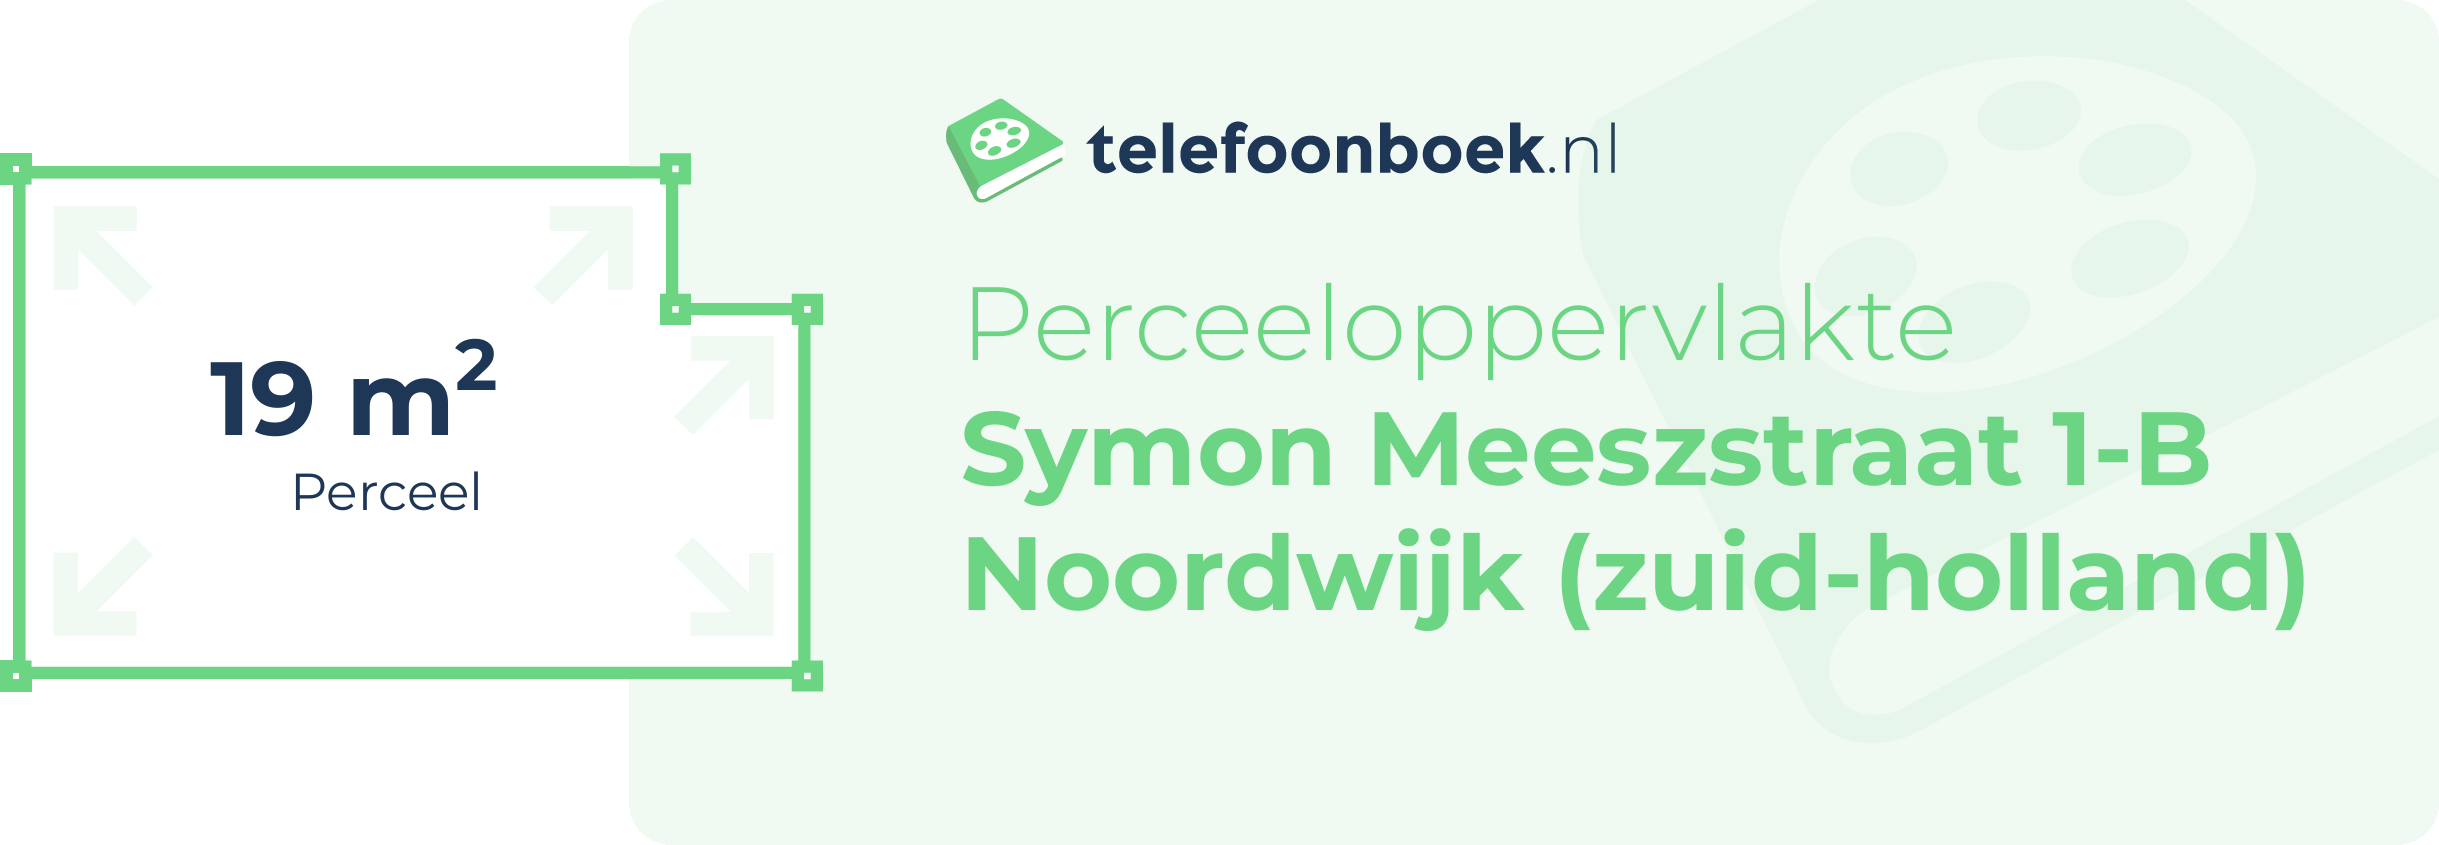 Perceeloppervlakte Symon Meeszstraat 1-B Noordwijk (Zuid-Holland)